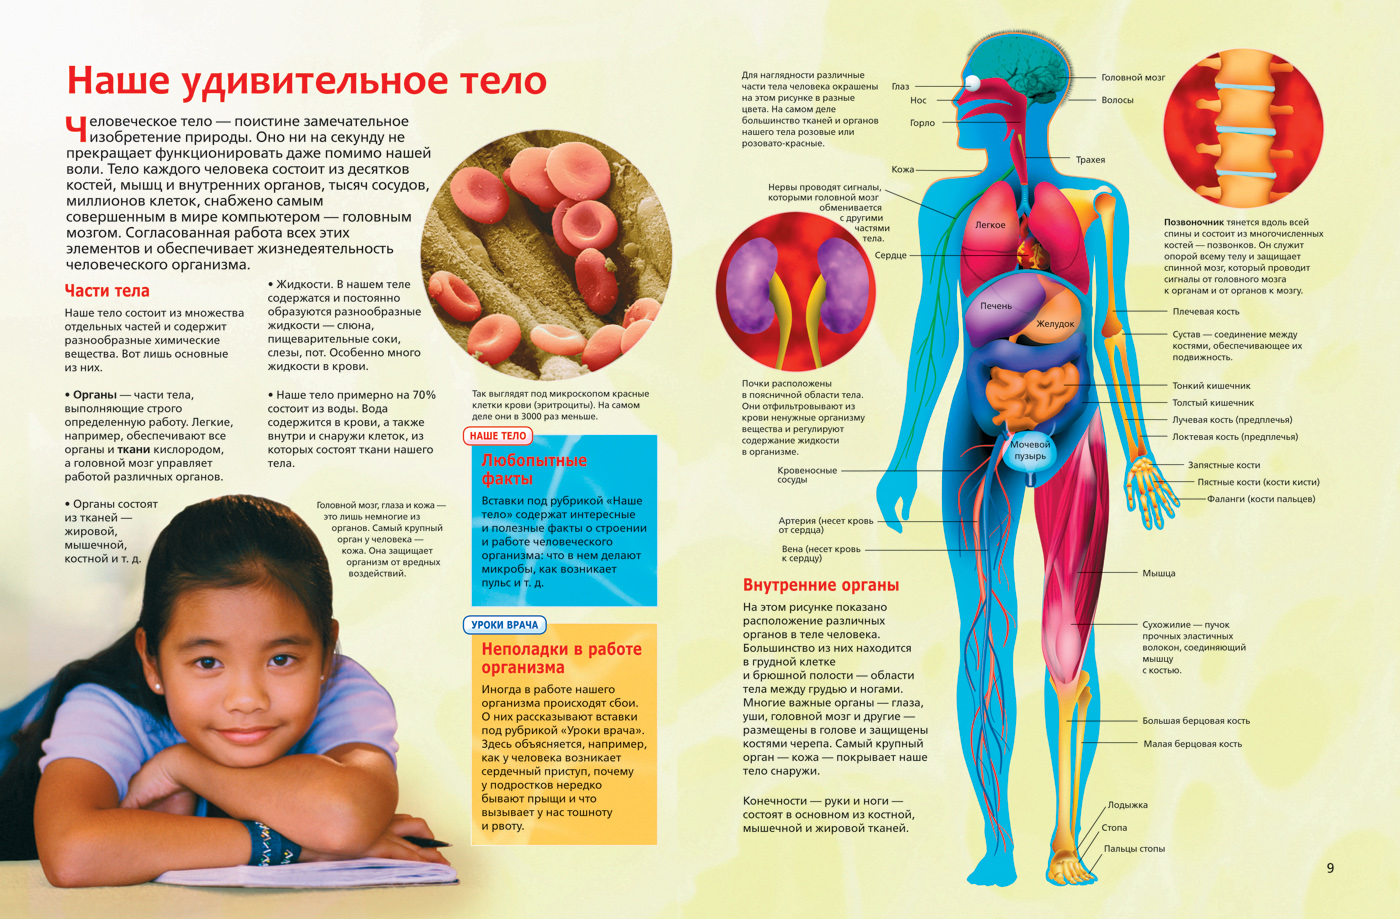 Факты систем органов человека. Интересные сведения о человеческом теле. Анатомия человека. Интересные факты об органах человека. Анатомия человека для детей.